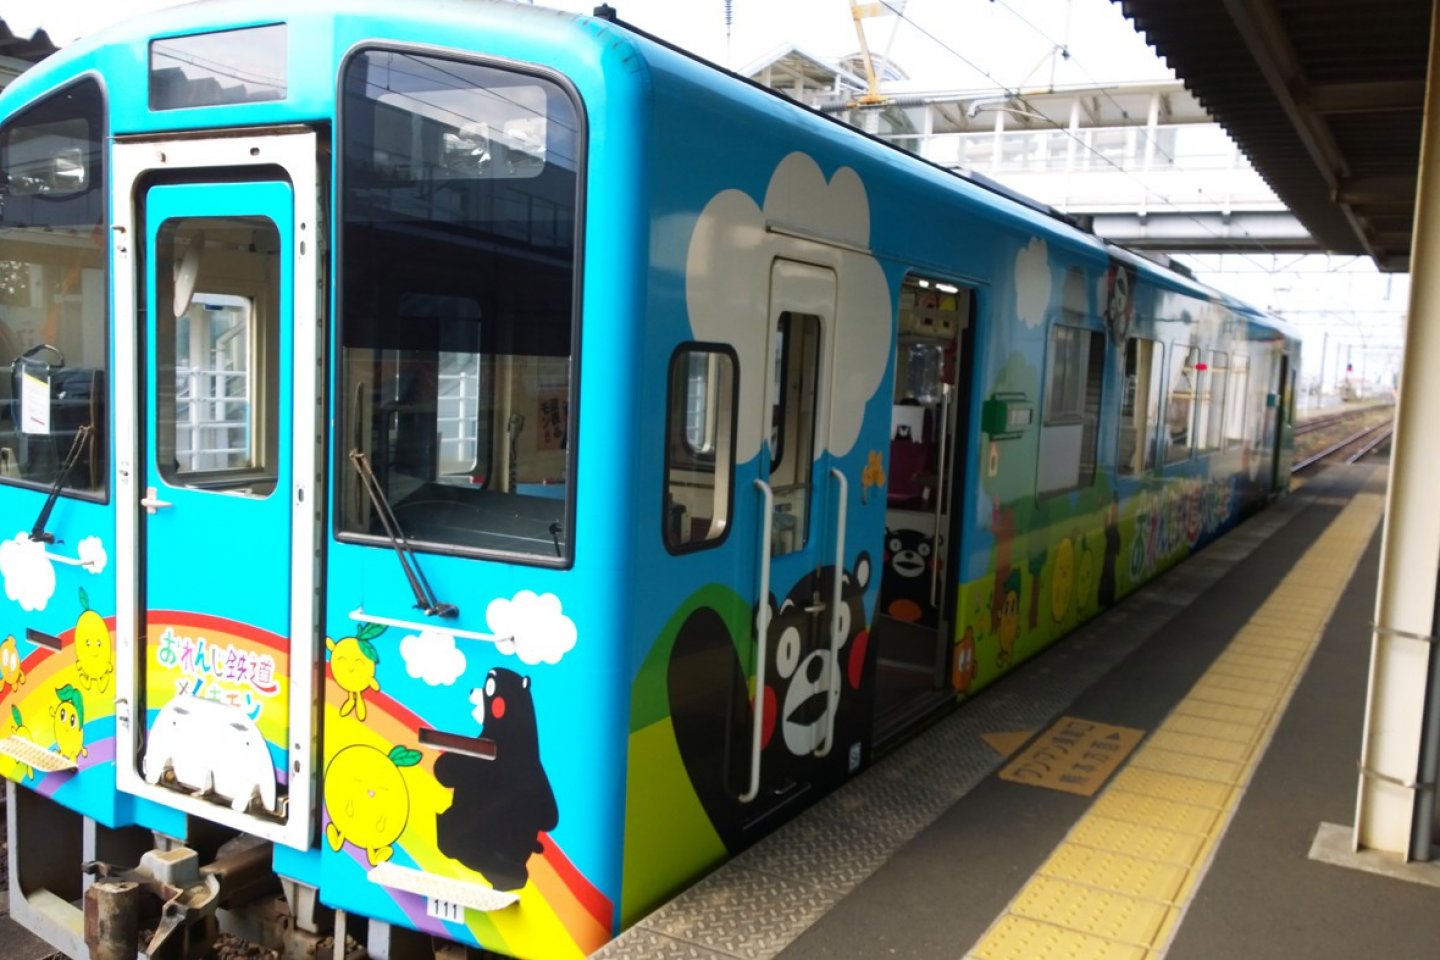 ขบวนคุมามงเป็นหนึ่งในขบวนรถไฟน่ารักๆ ที่วิ่งบริการใน Hisatsu Orange Railway (肥薩おれんじ鉄道) รถไฟสายไร่ส้มที่วิ่งเรียบชายฝั่งทะเลและสวนส้มให้คุณชมทิวทัศน์ริมฝั่งทะเลของเกาะคิวชูอันงดงาม